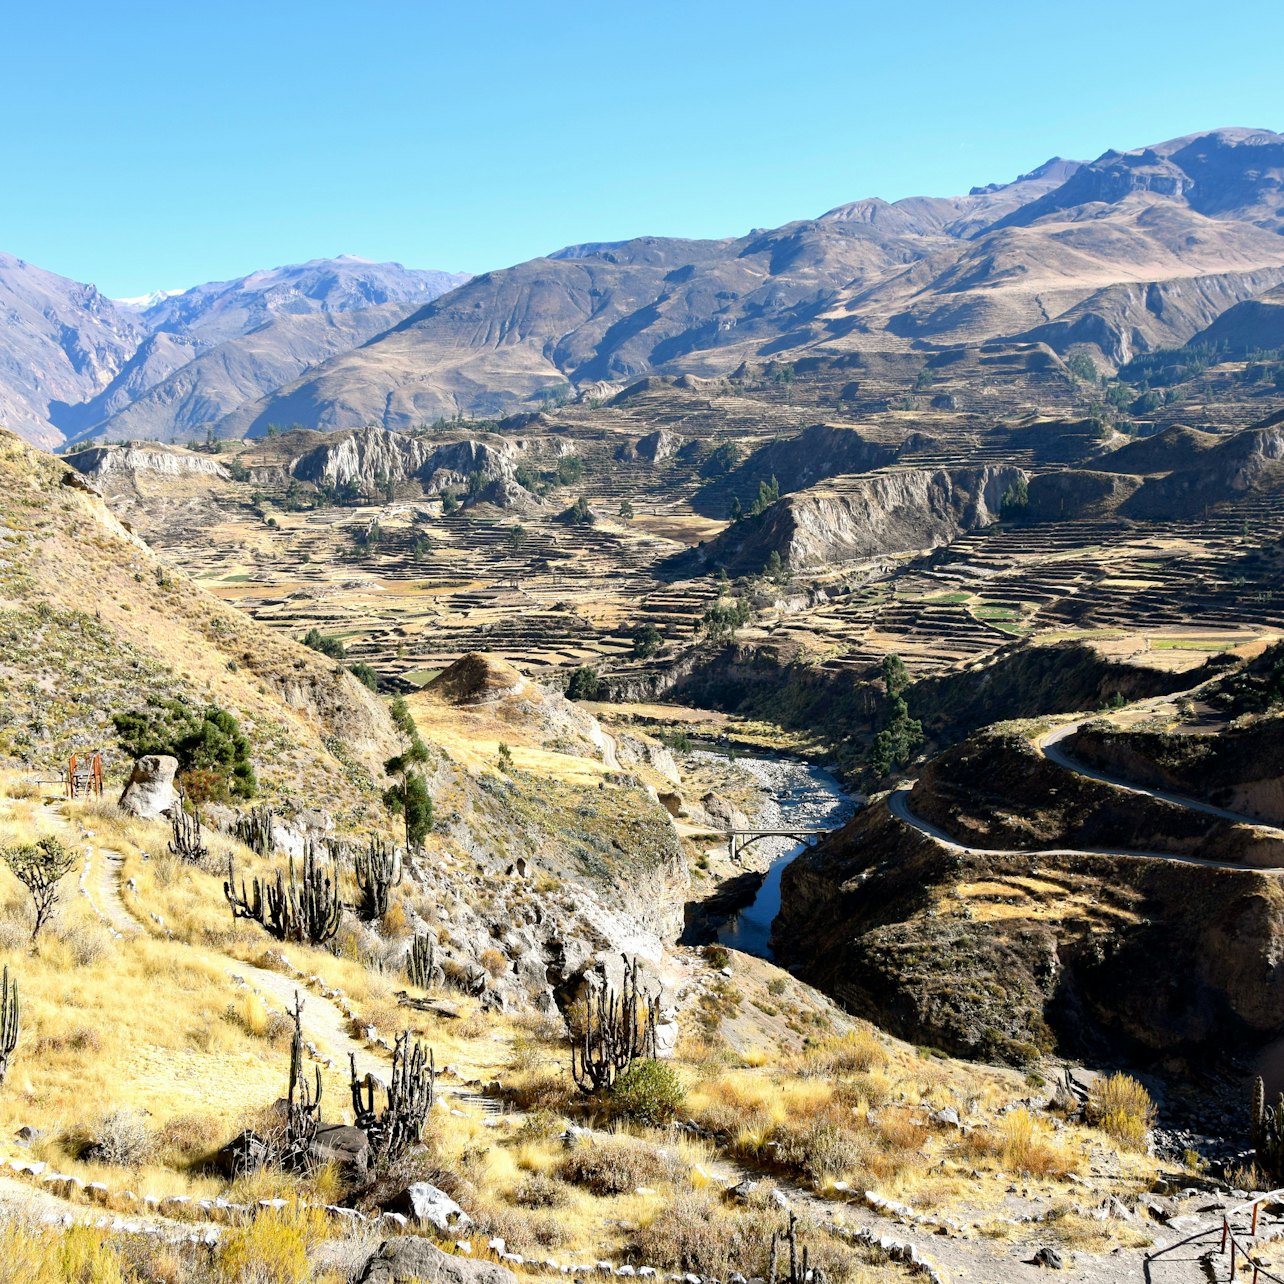 Valle Sagrado de los Incas: Tour de un día desde Cuzco - Alojamientos en Cuzco